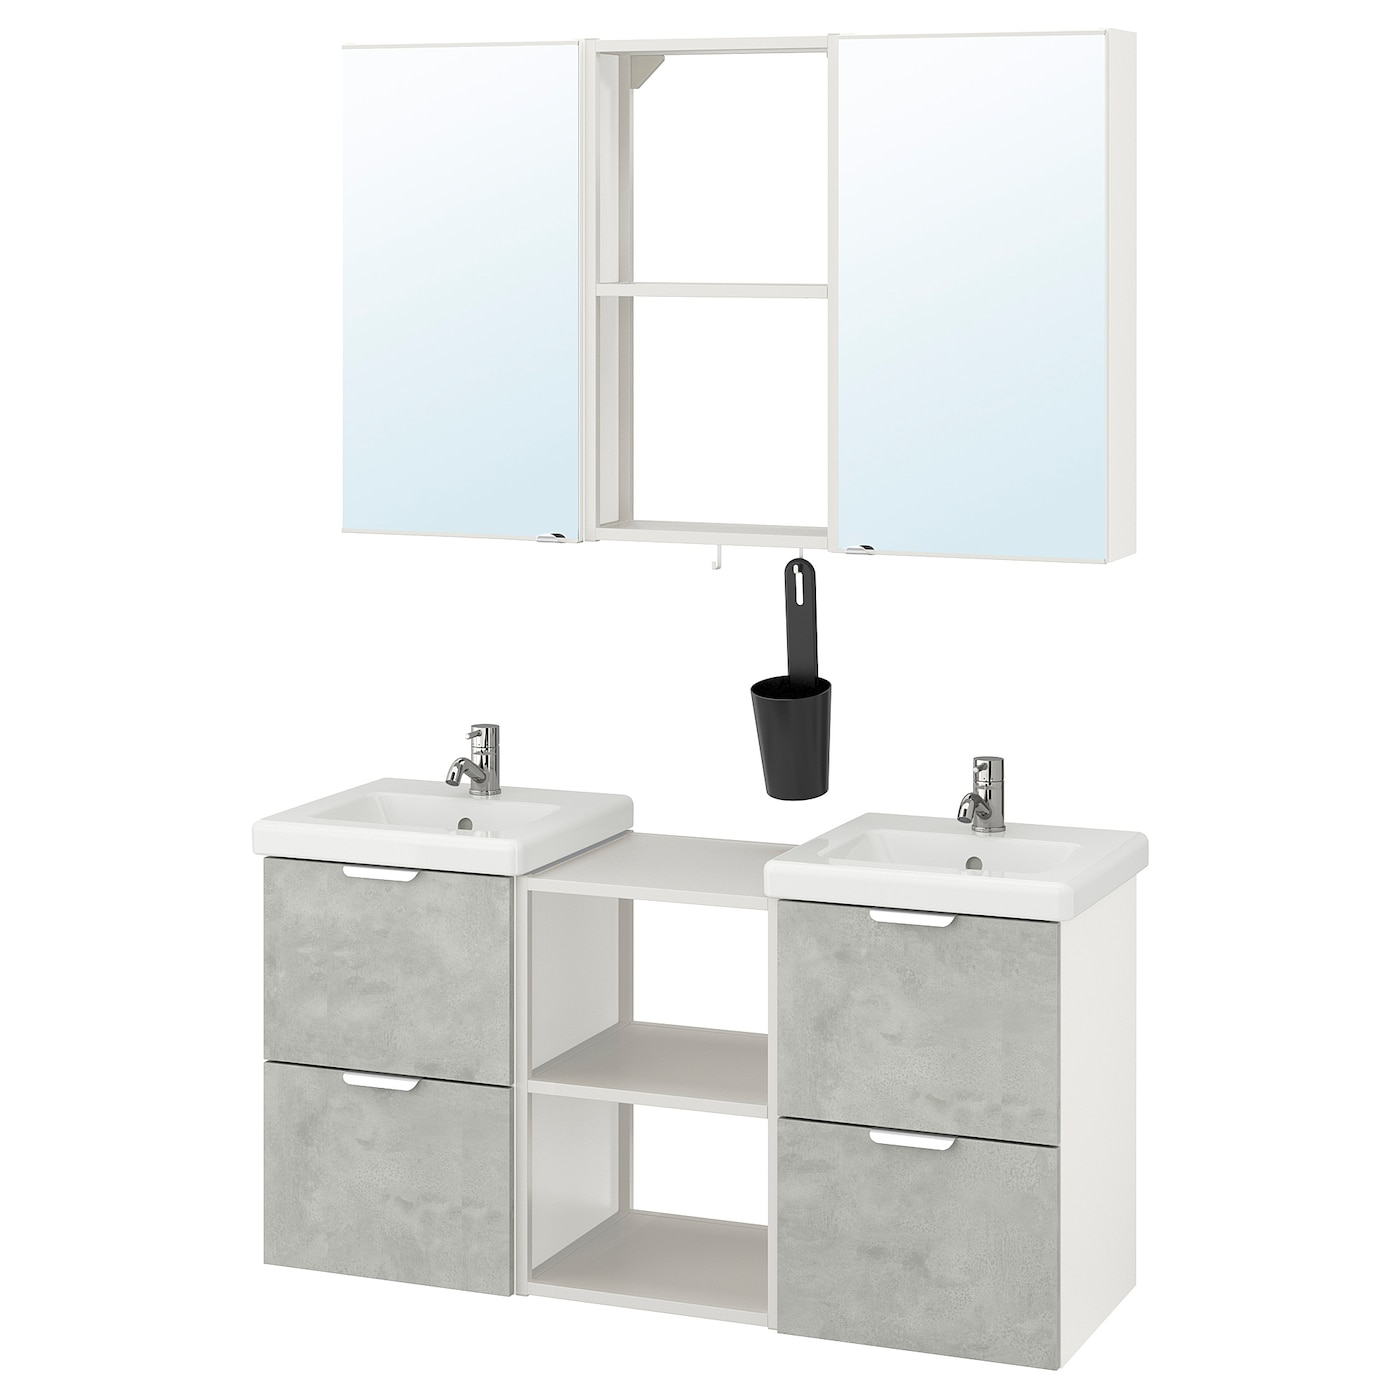 ИКЕА ENHET / TVÄLLEN Меблі для ванної кімнати, набір 22 шт - ефект бетону / білий Pilkån змішувач 124x43x65 см, 093.376.01